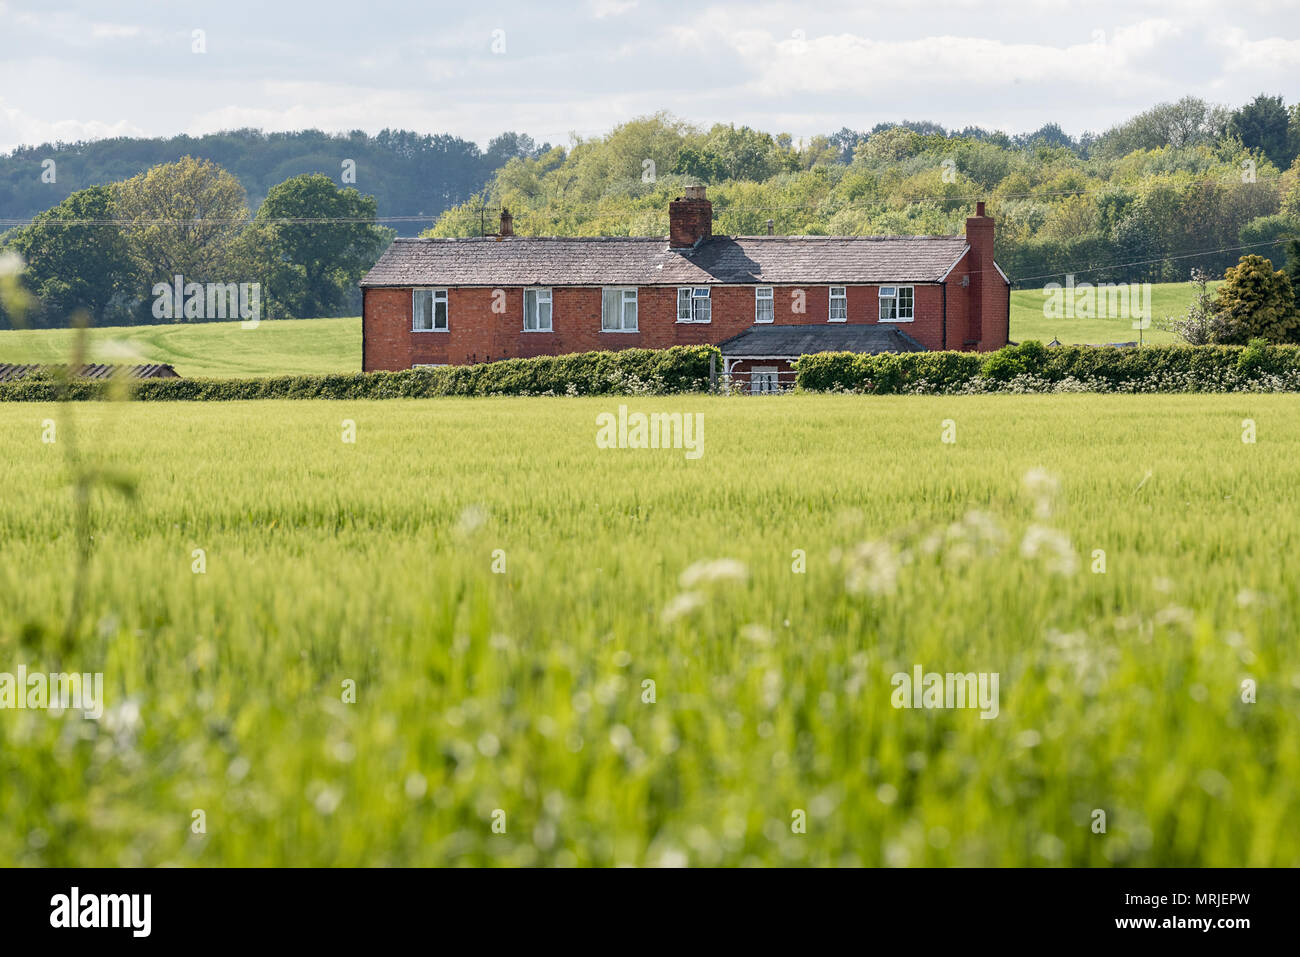 Une maison en brique rouge de campagne se trouve sur un champ de cultures dans un labyrinthe vert green country side, Worcestershire, Angleterre. Banque D'Images